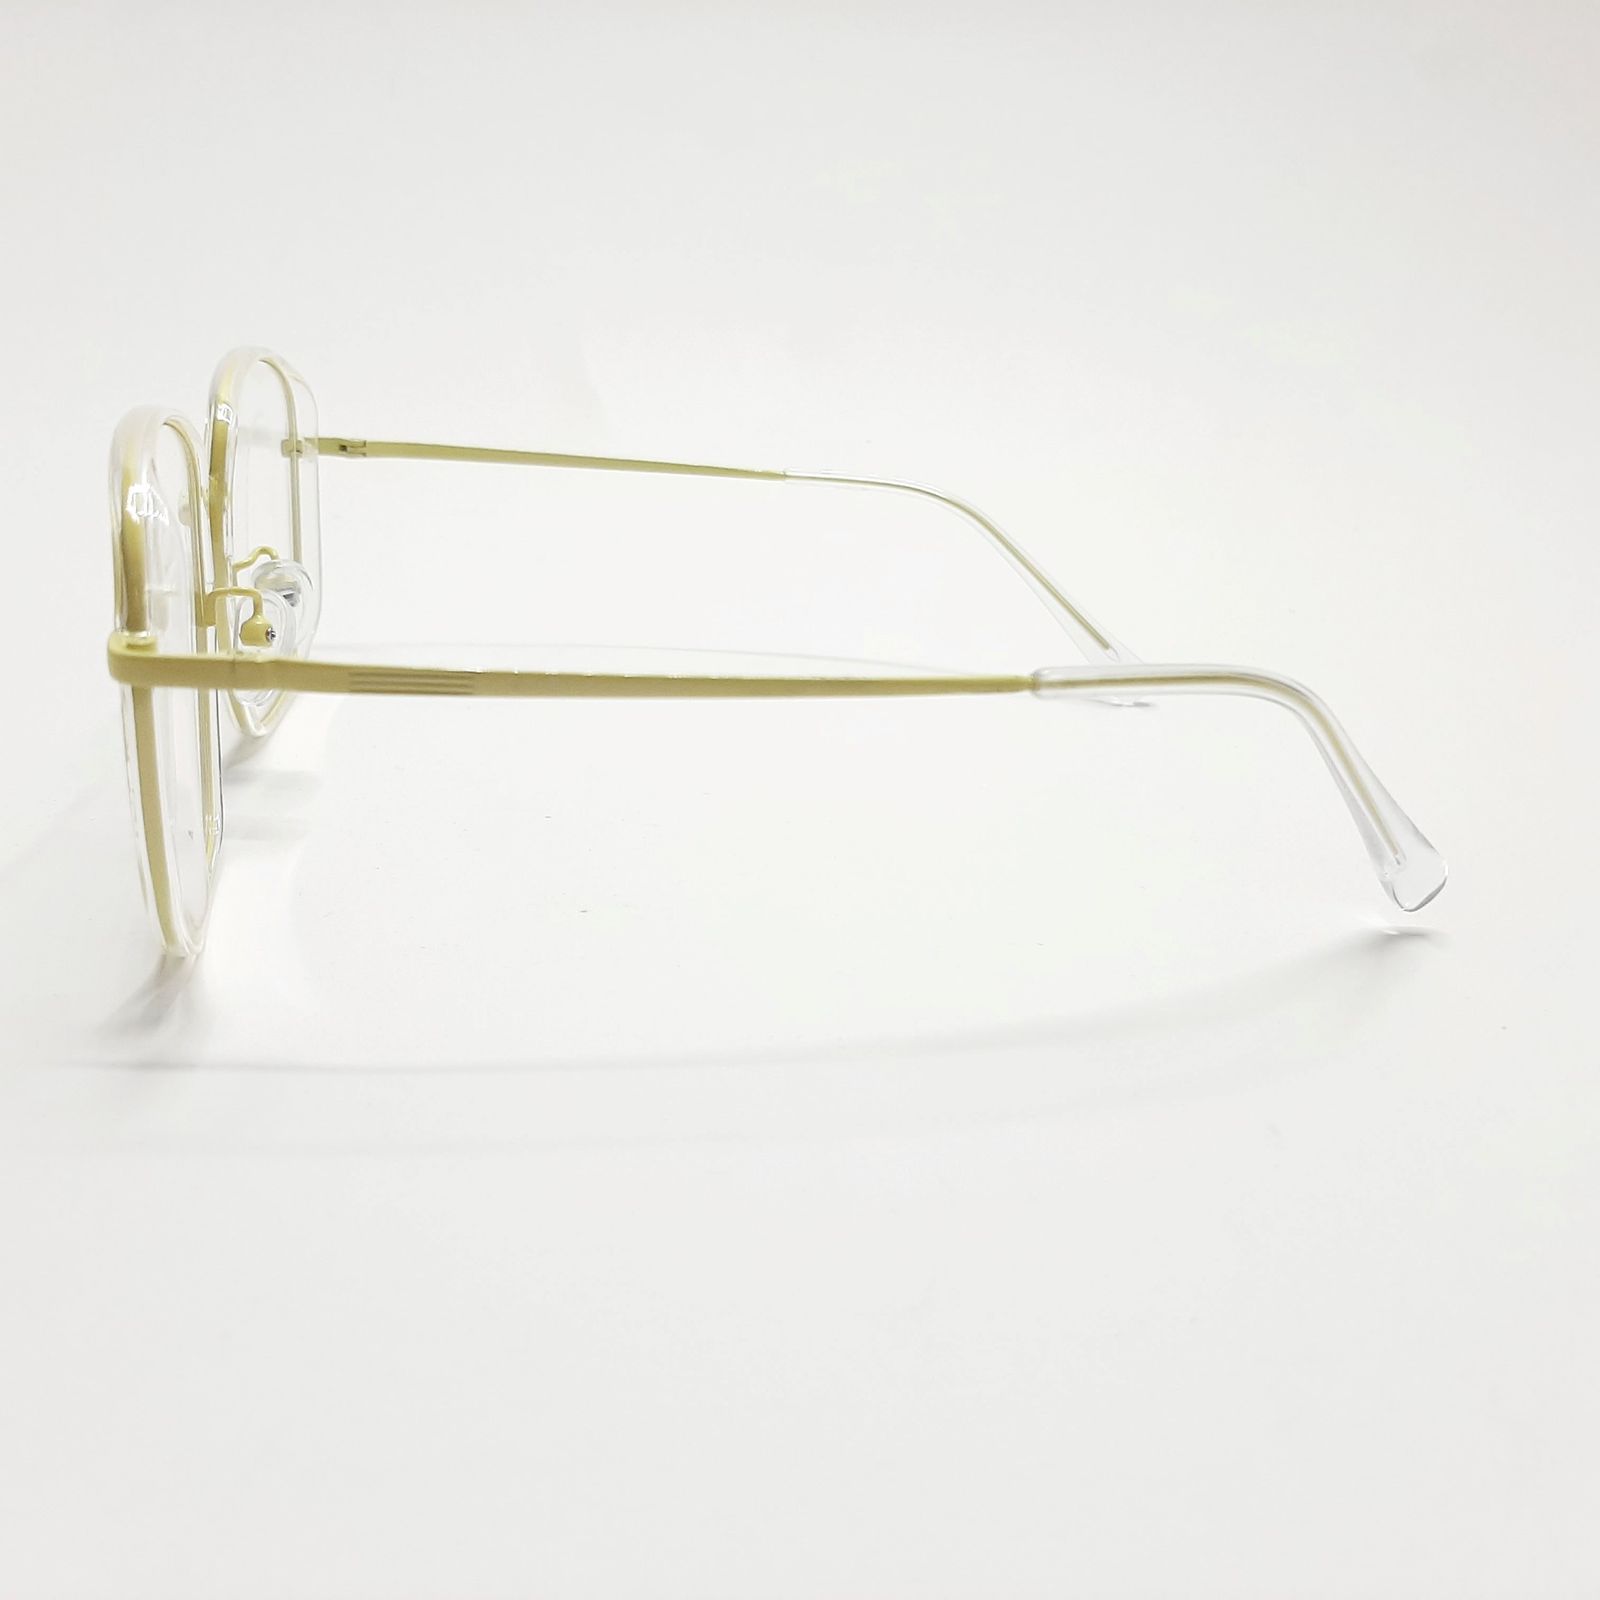 فریم عینک طبی تد بیکر مدل TB9181c85 -  - 5